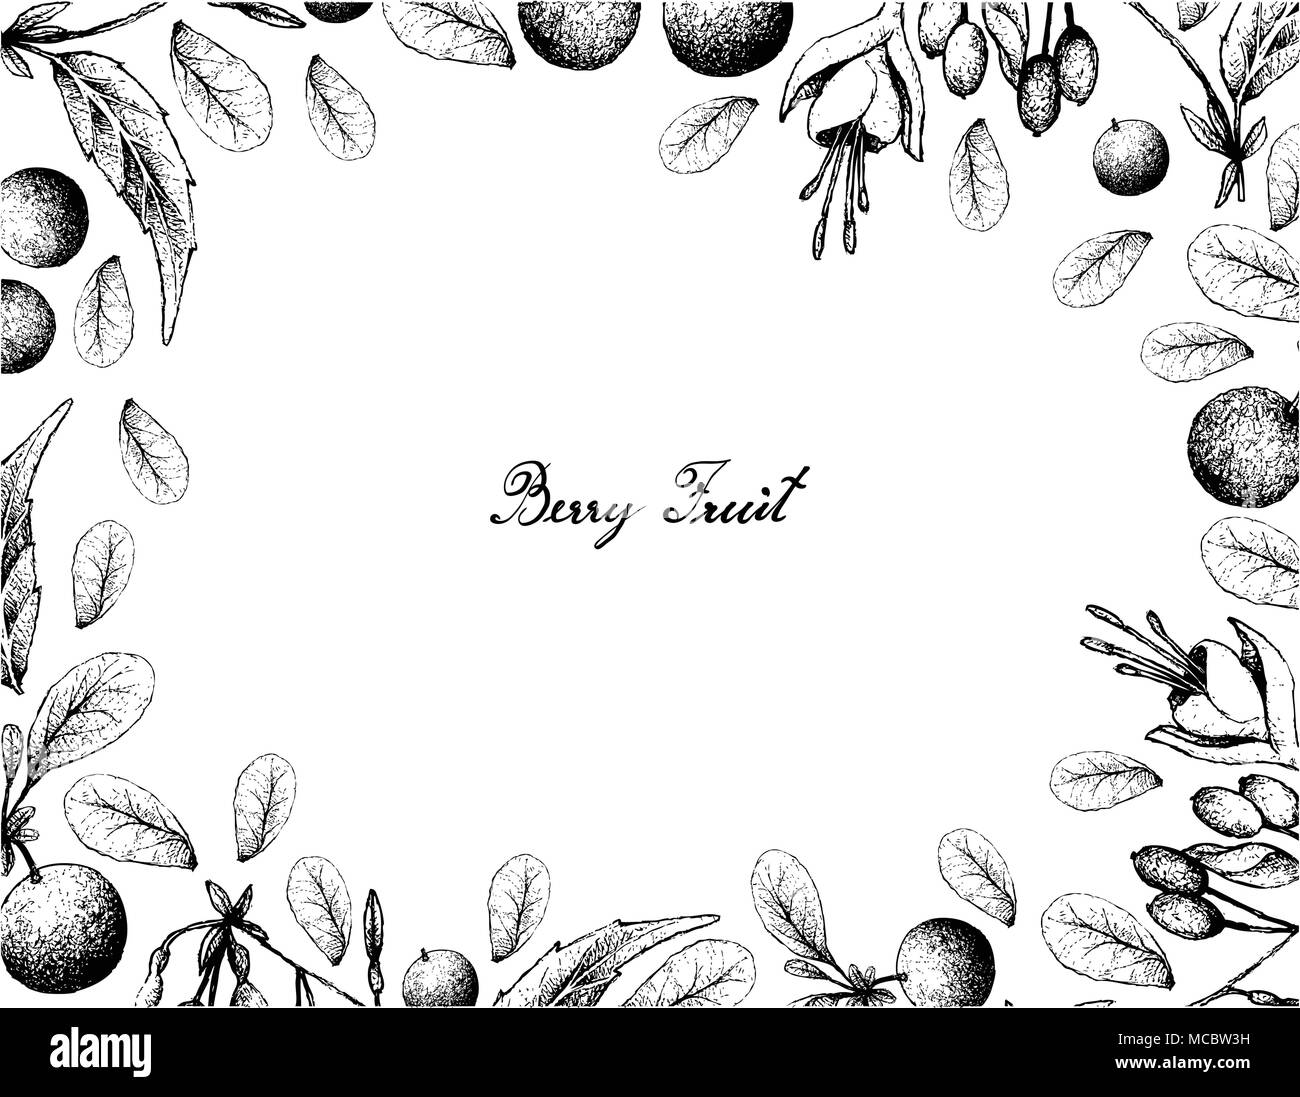 Beerenfrucht, Illustration von Hand gezeichnete Skizze von Bog Heidelbeere oder Vaccinium Uiginosum und Bandolero de Princesa oder Fuchsia Regia Früchte isoliert auf Stock Vektor